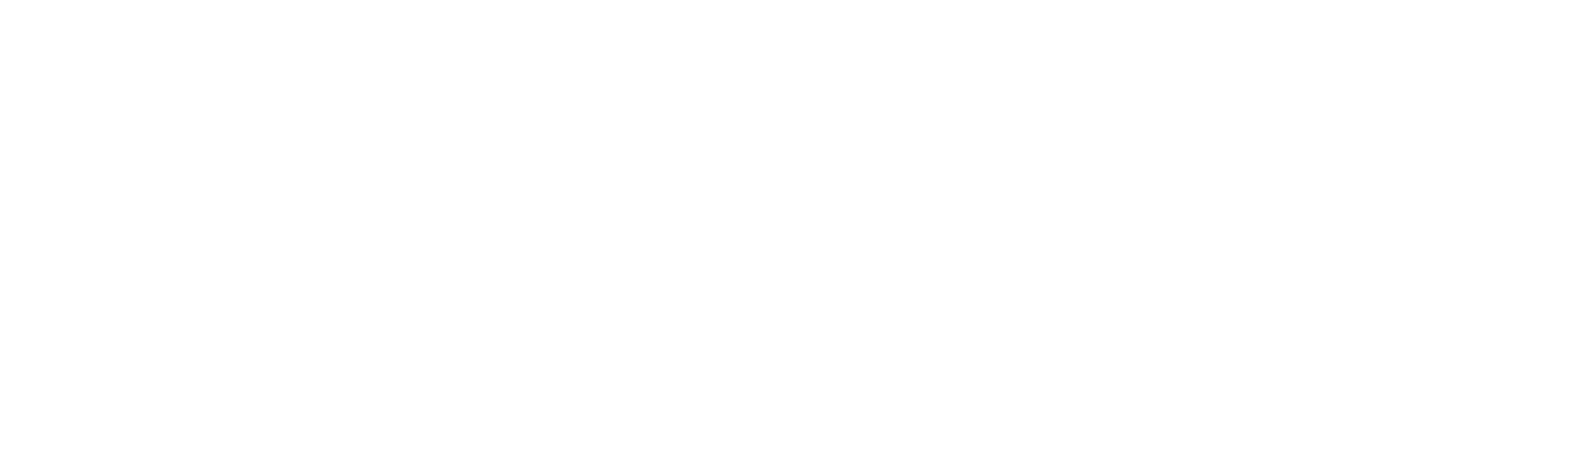 Cheniere Energy
 logo grand pour les fonds sombres (PNG transparent)